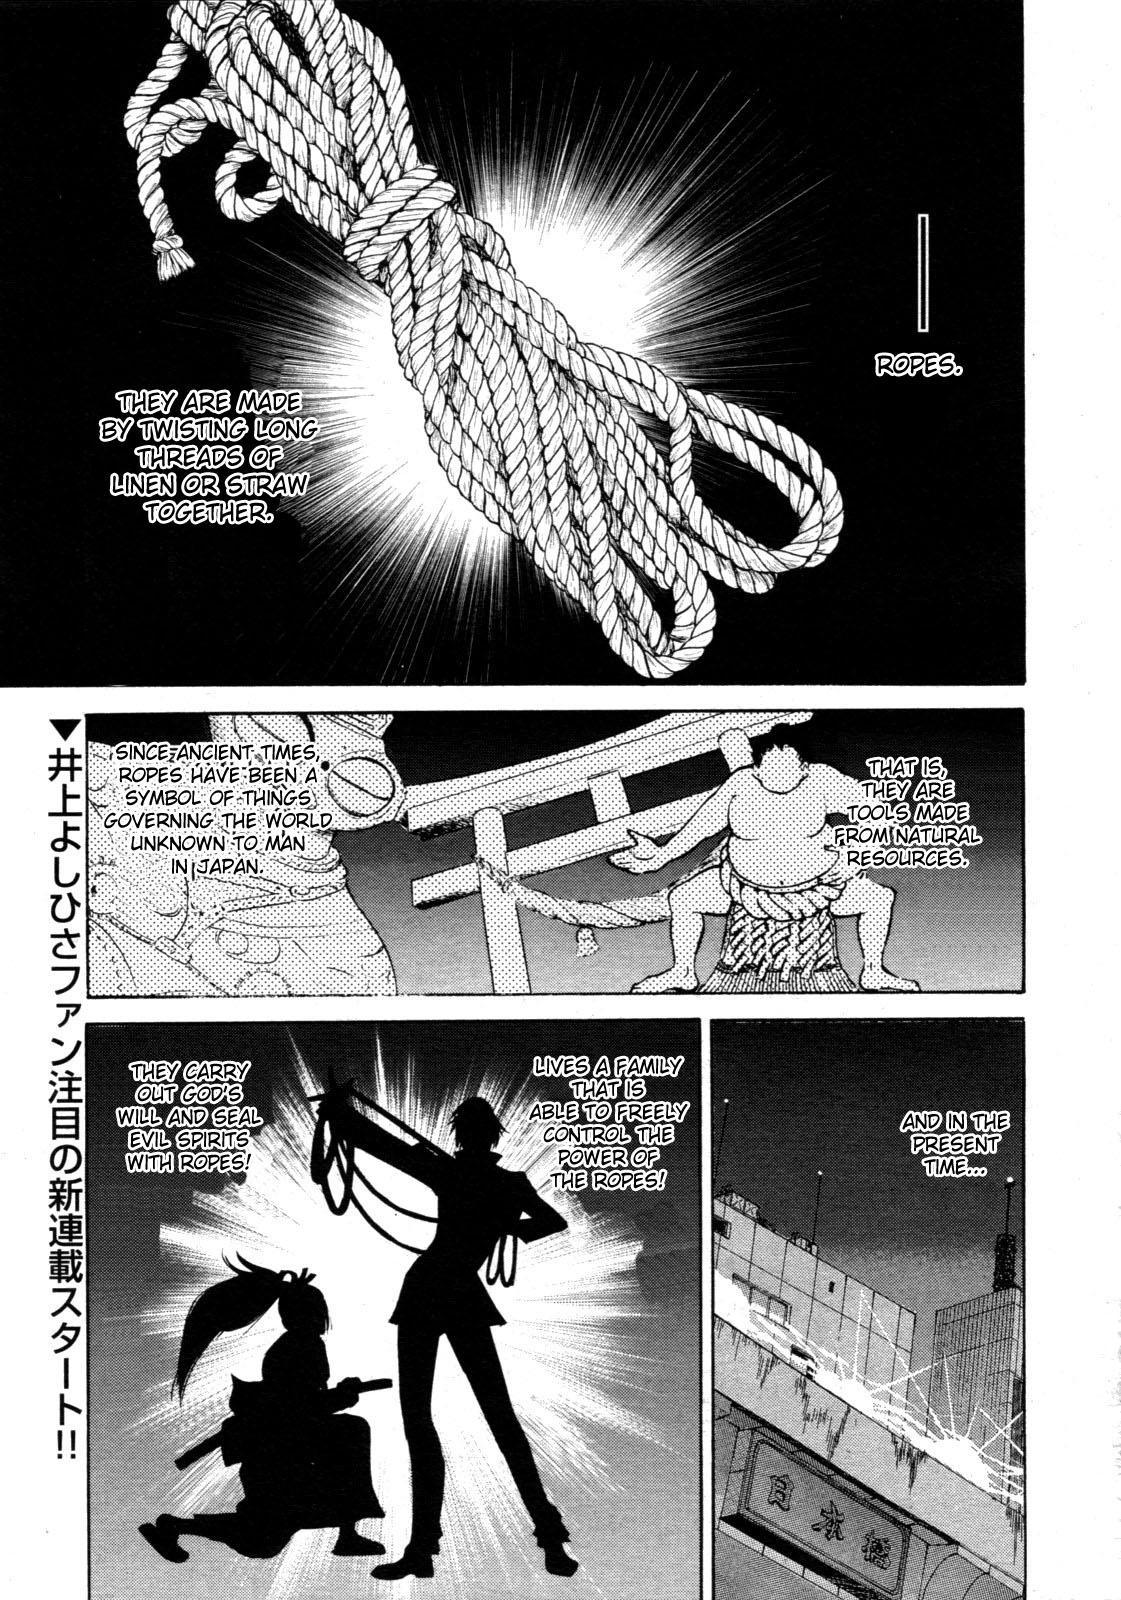 Gostoso Nawashi Animated - Page 2